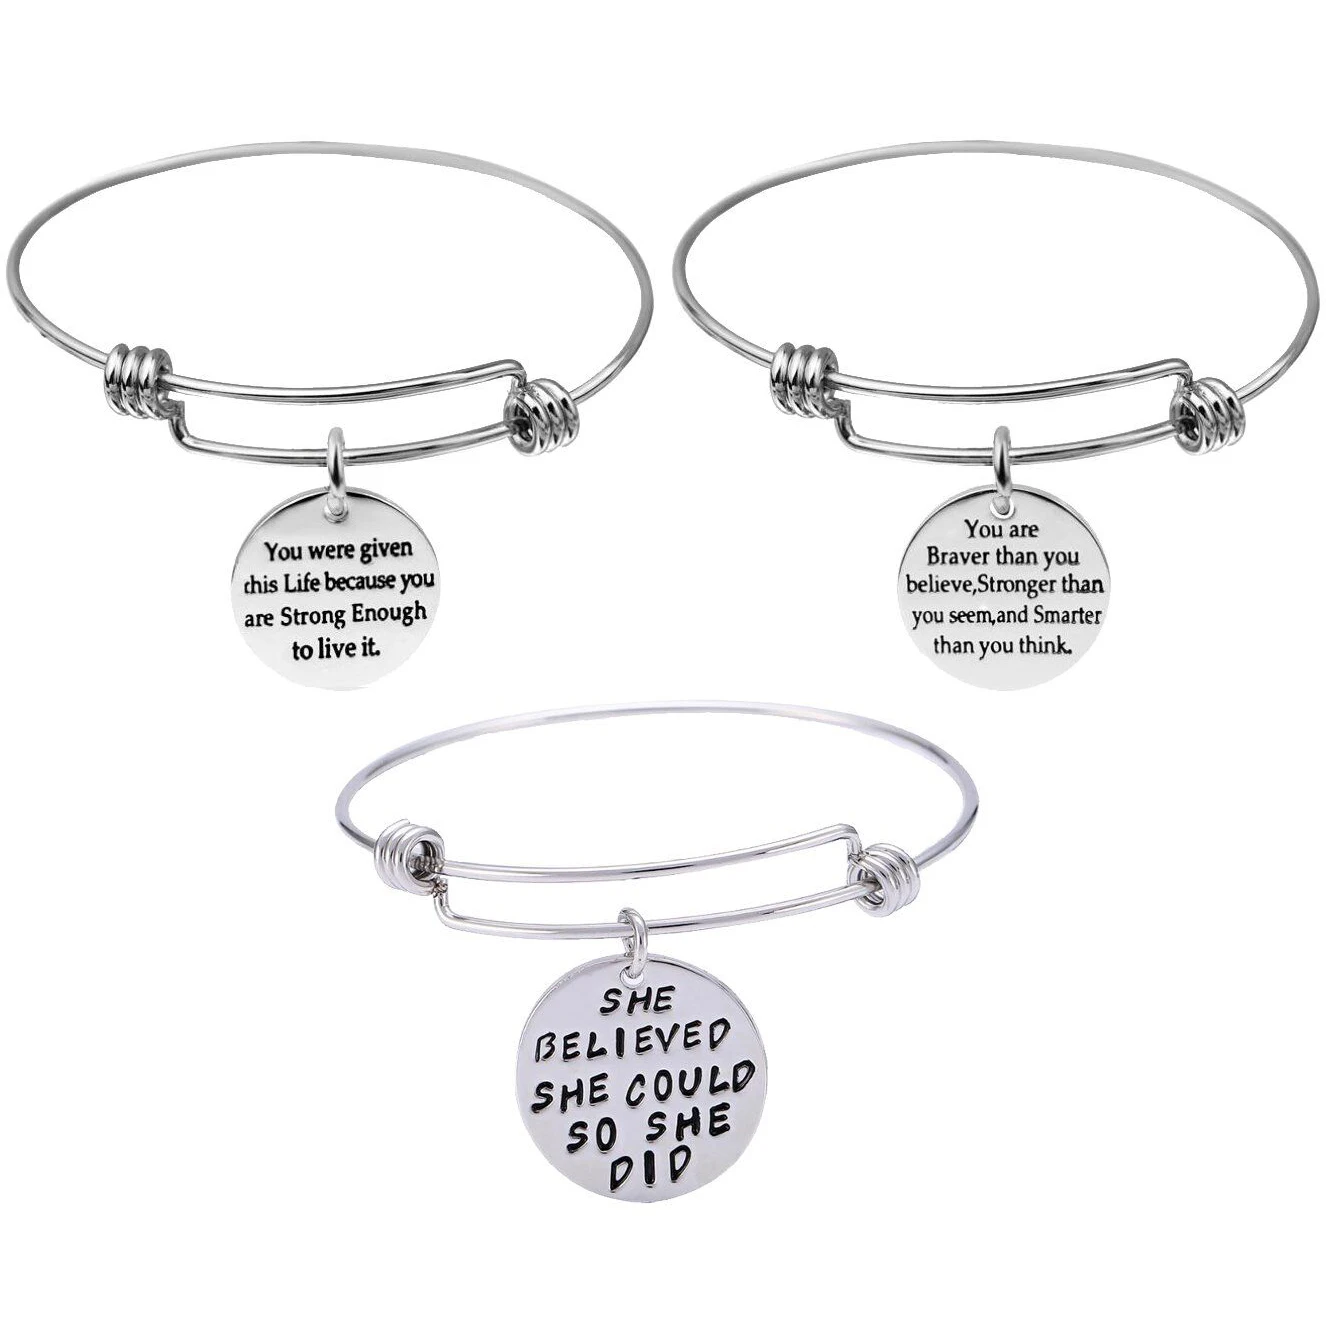 

Engraved Message Inspirational Words Adjustable Stainless Steel Motivational Bangle Bracelet